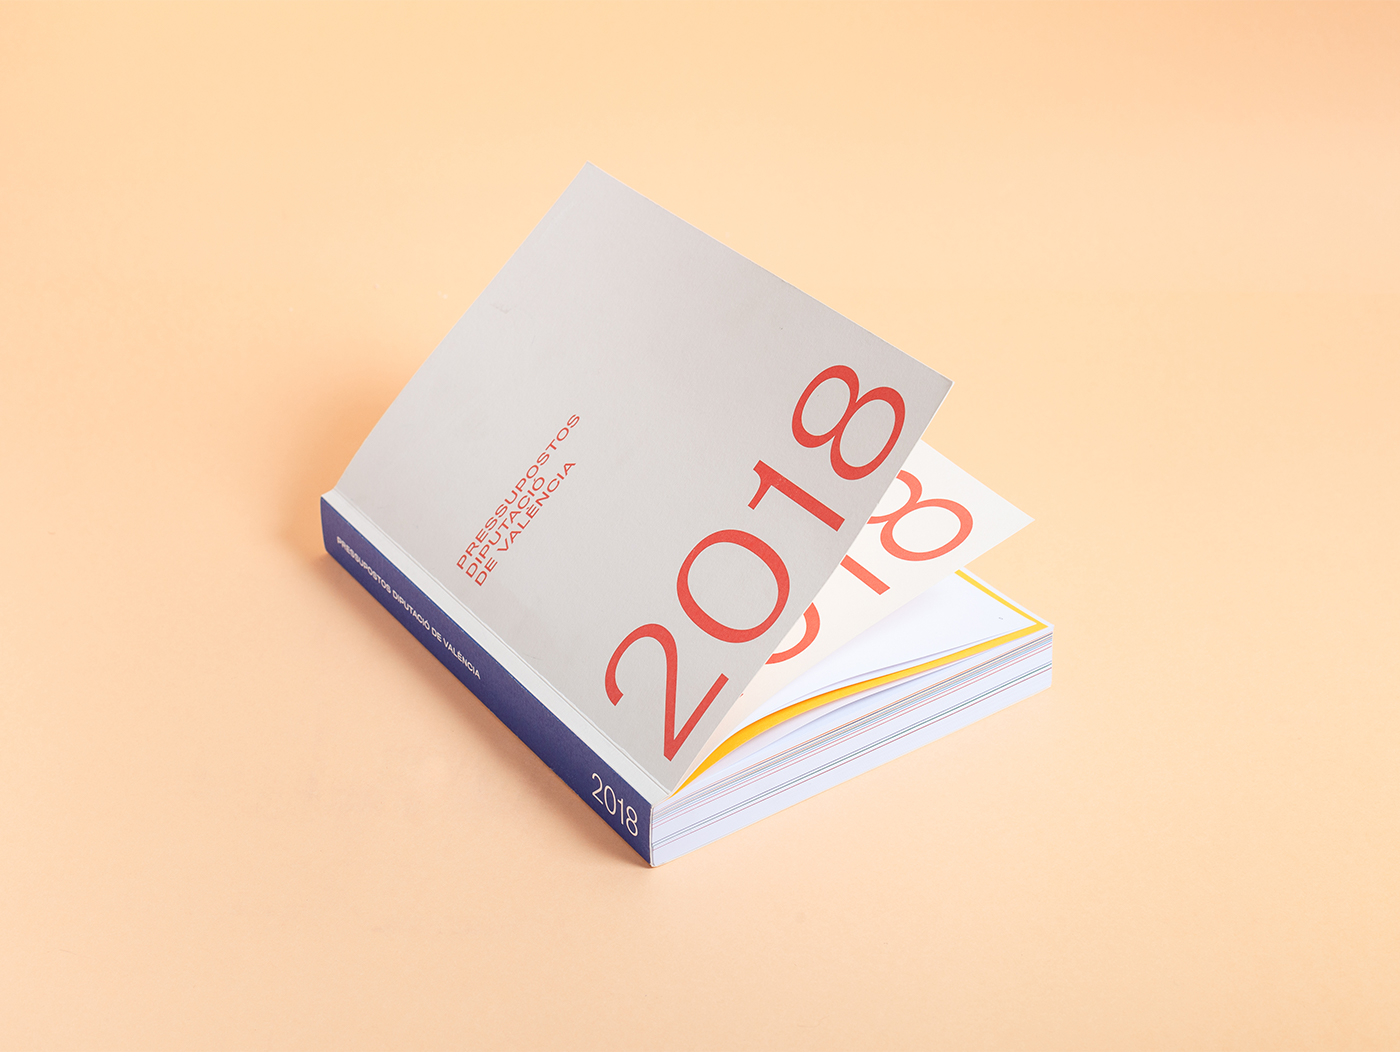 Diseño editorial libro de presupuestos 2016 Diputació de Valencia - Estudio de diseño gráfico en Valencia Pixelarte